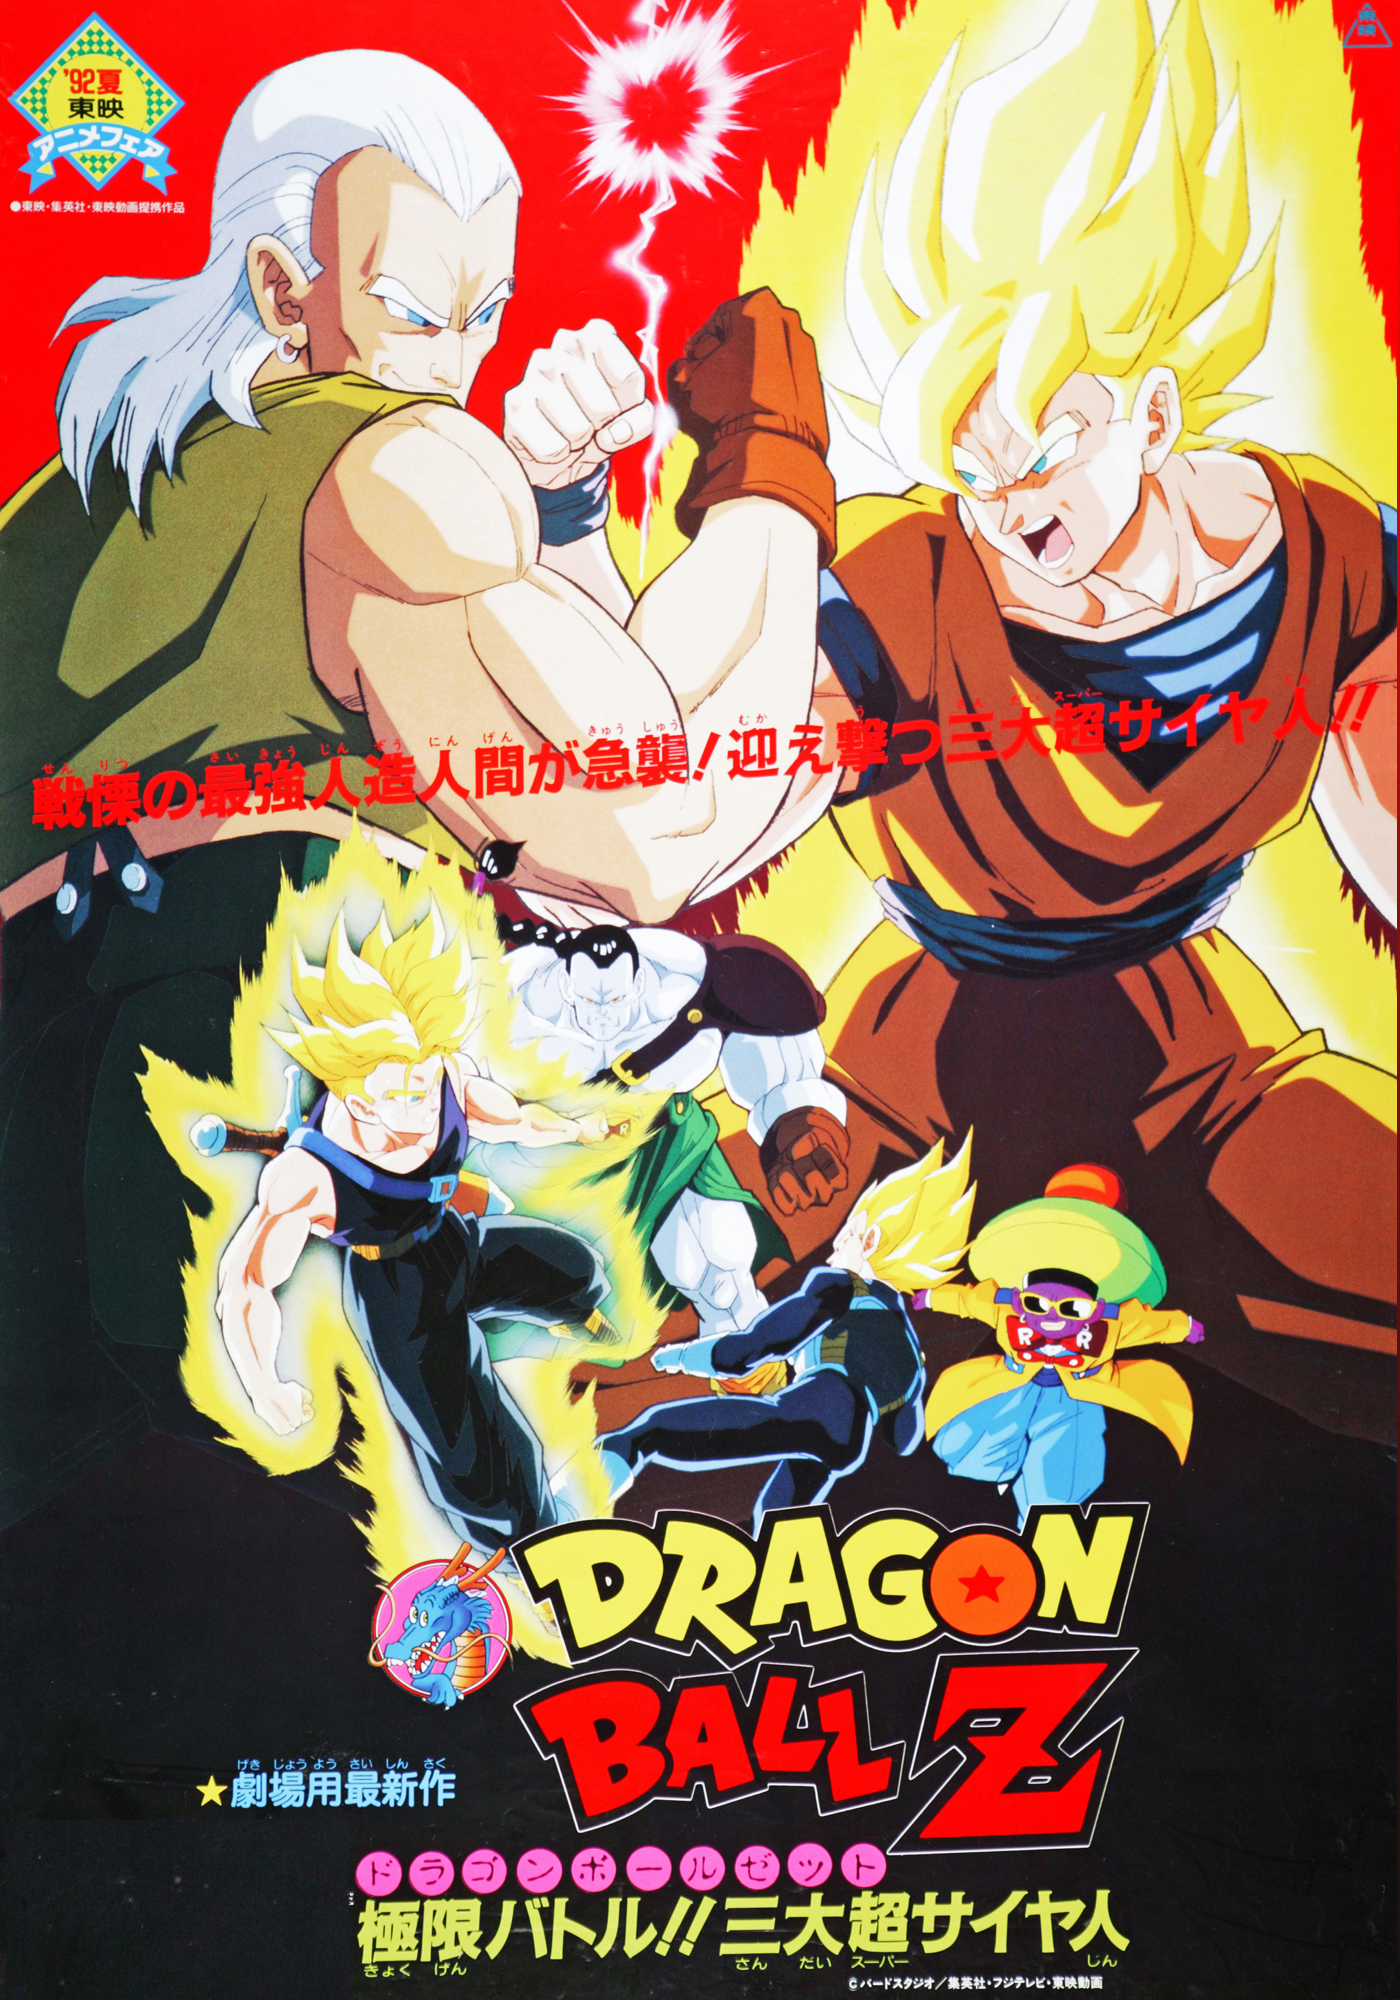 Dragon Ball Z movie 7 | Japanese Anime Wiki | FANDOM powered by Wikia